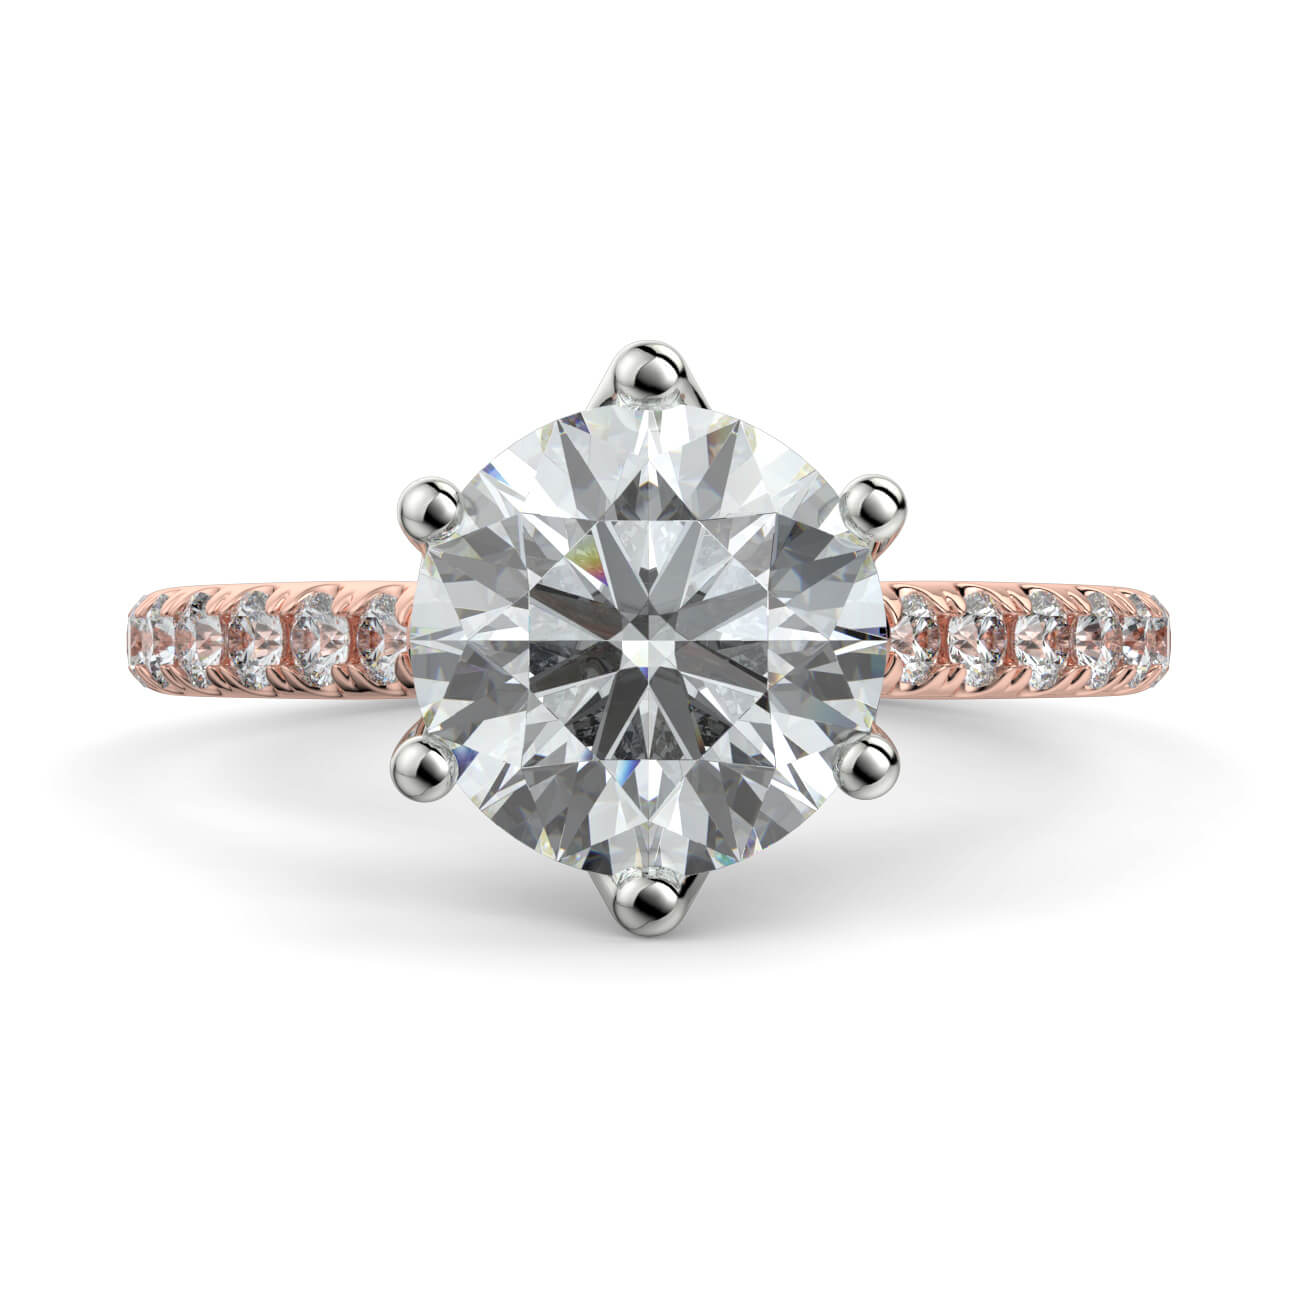 Tulip Basket Diamond Engagement Ring in 18k Rose and White Gold – Australian Diamond Network